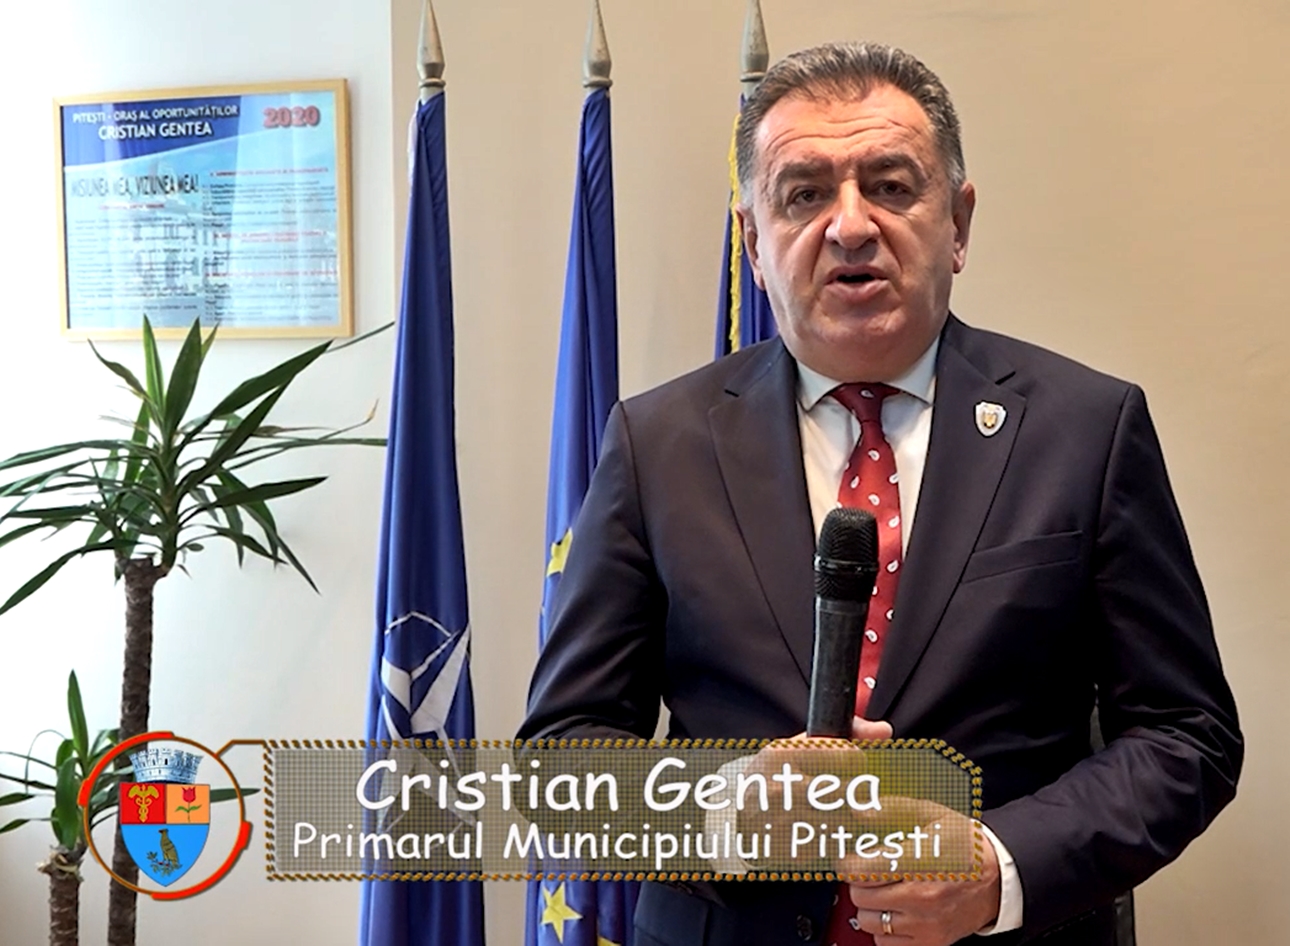 VIDEO: Felicitare Sărbători Pascale 2022 – Cristian Gentea, Primar al Municipiului Piteşti